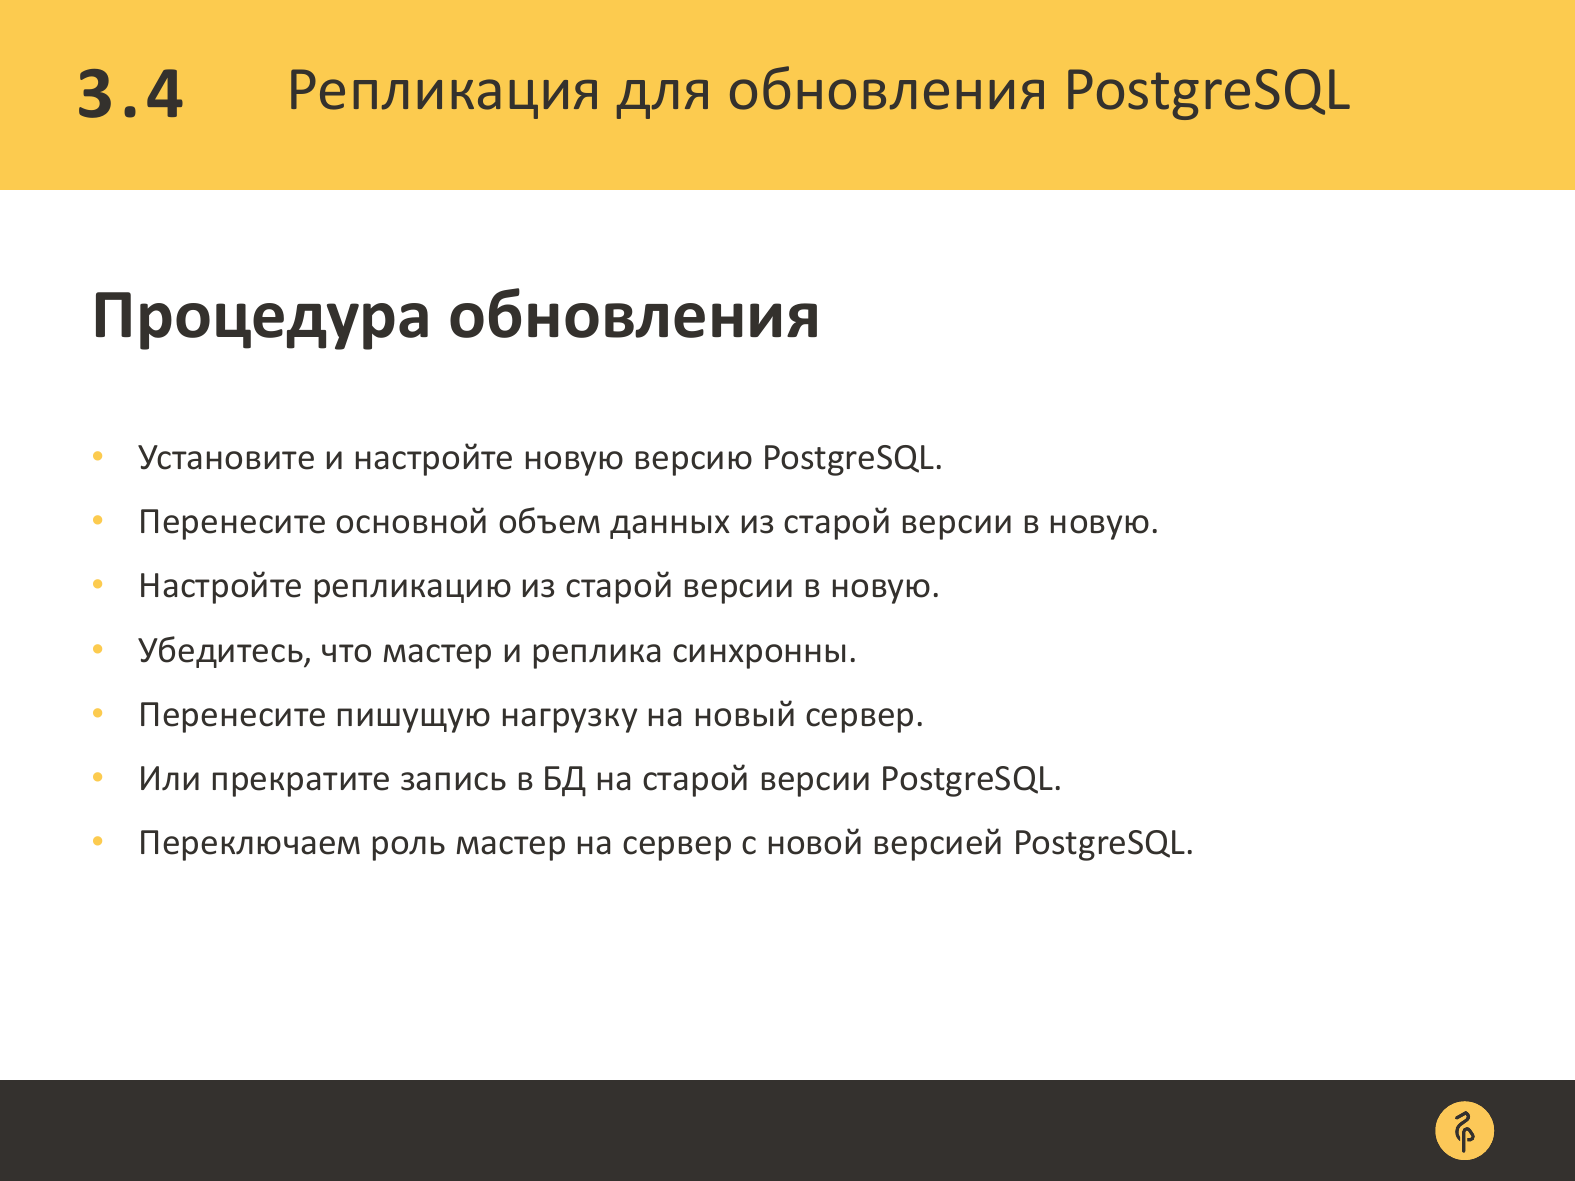 Практика обновления версий PostgreSQL. Андрей Сальников - 25